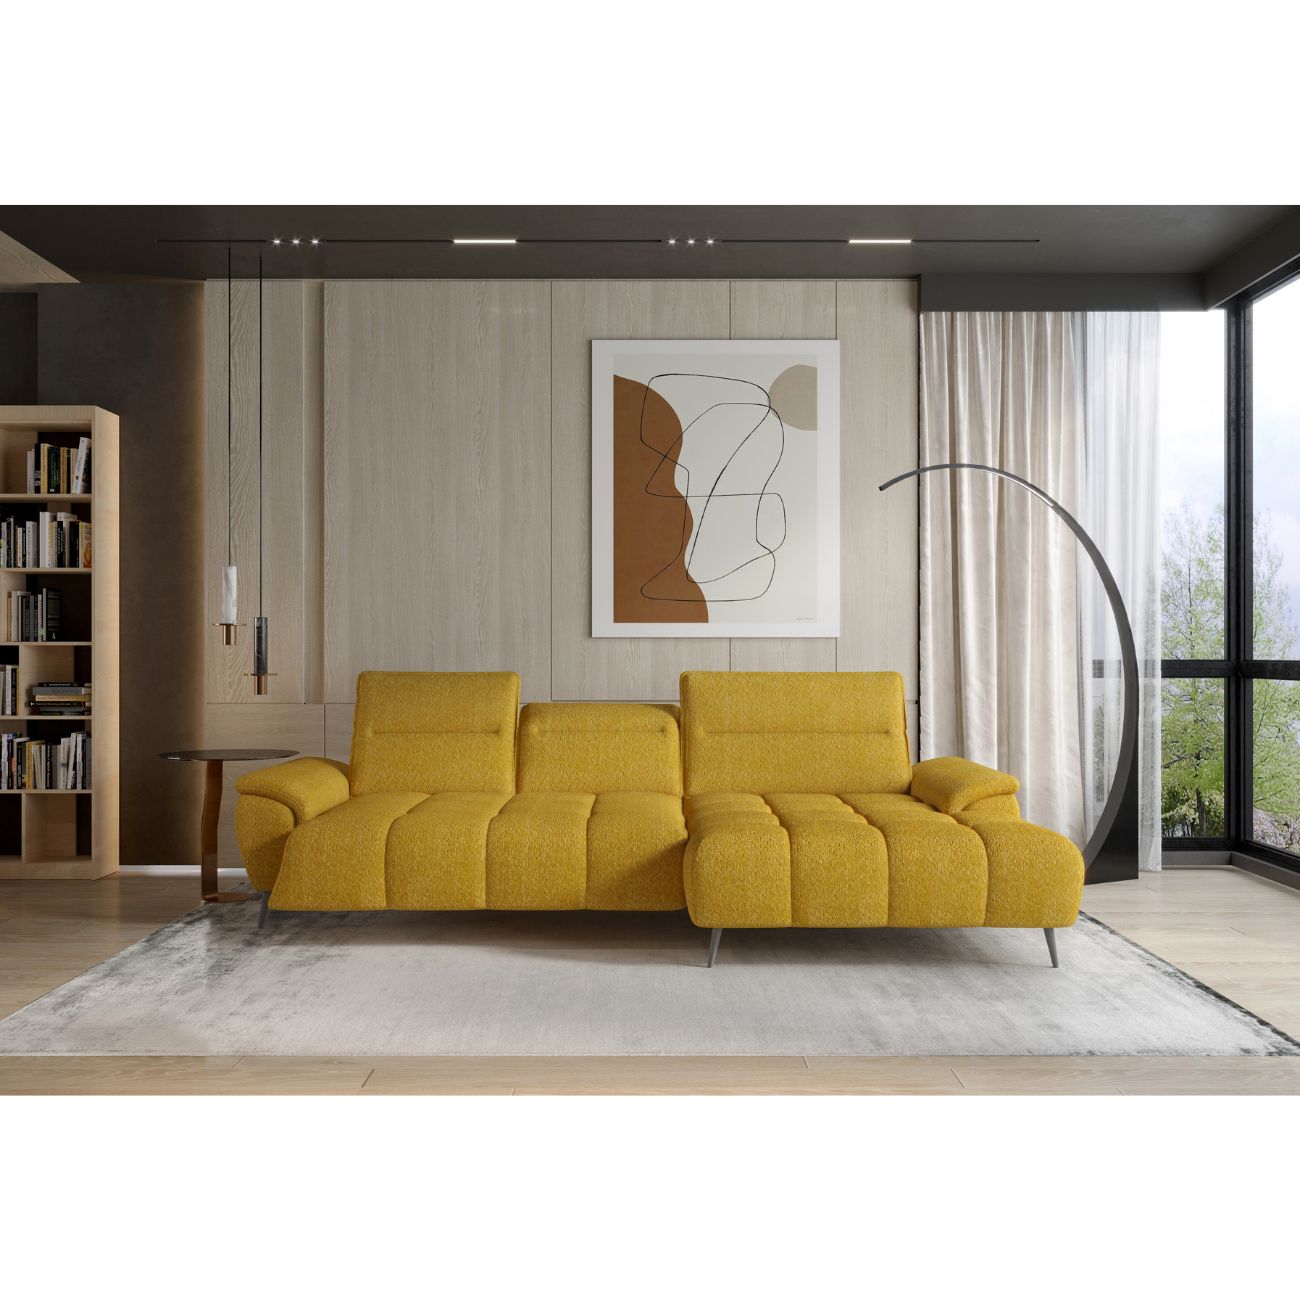 Żółty narożnik elektryczny na srebrnych nogach MONTANA MINI to elegancki mebel do salonu, pokoju dziennego, młodzieżowego, salonu i innych tego typu pomieszczeń.